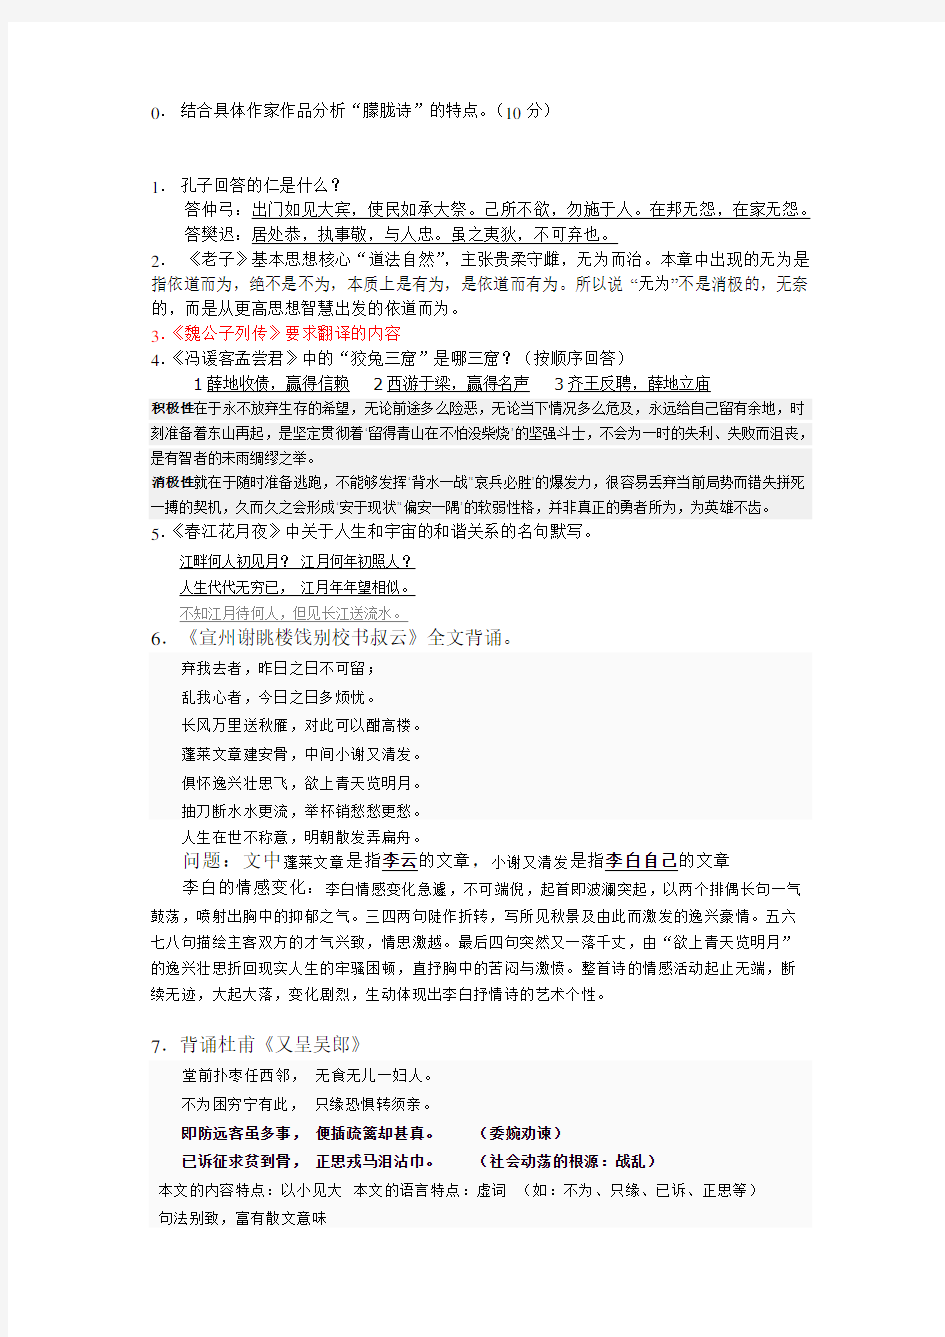 上海商学院 大学语文 --- 期末考试复习资料